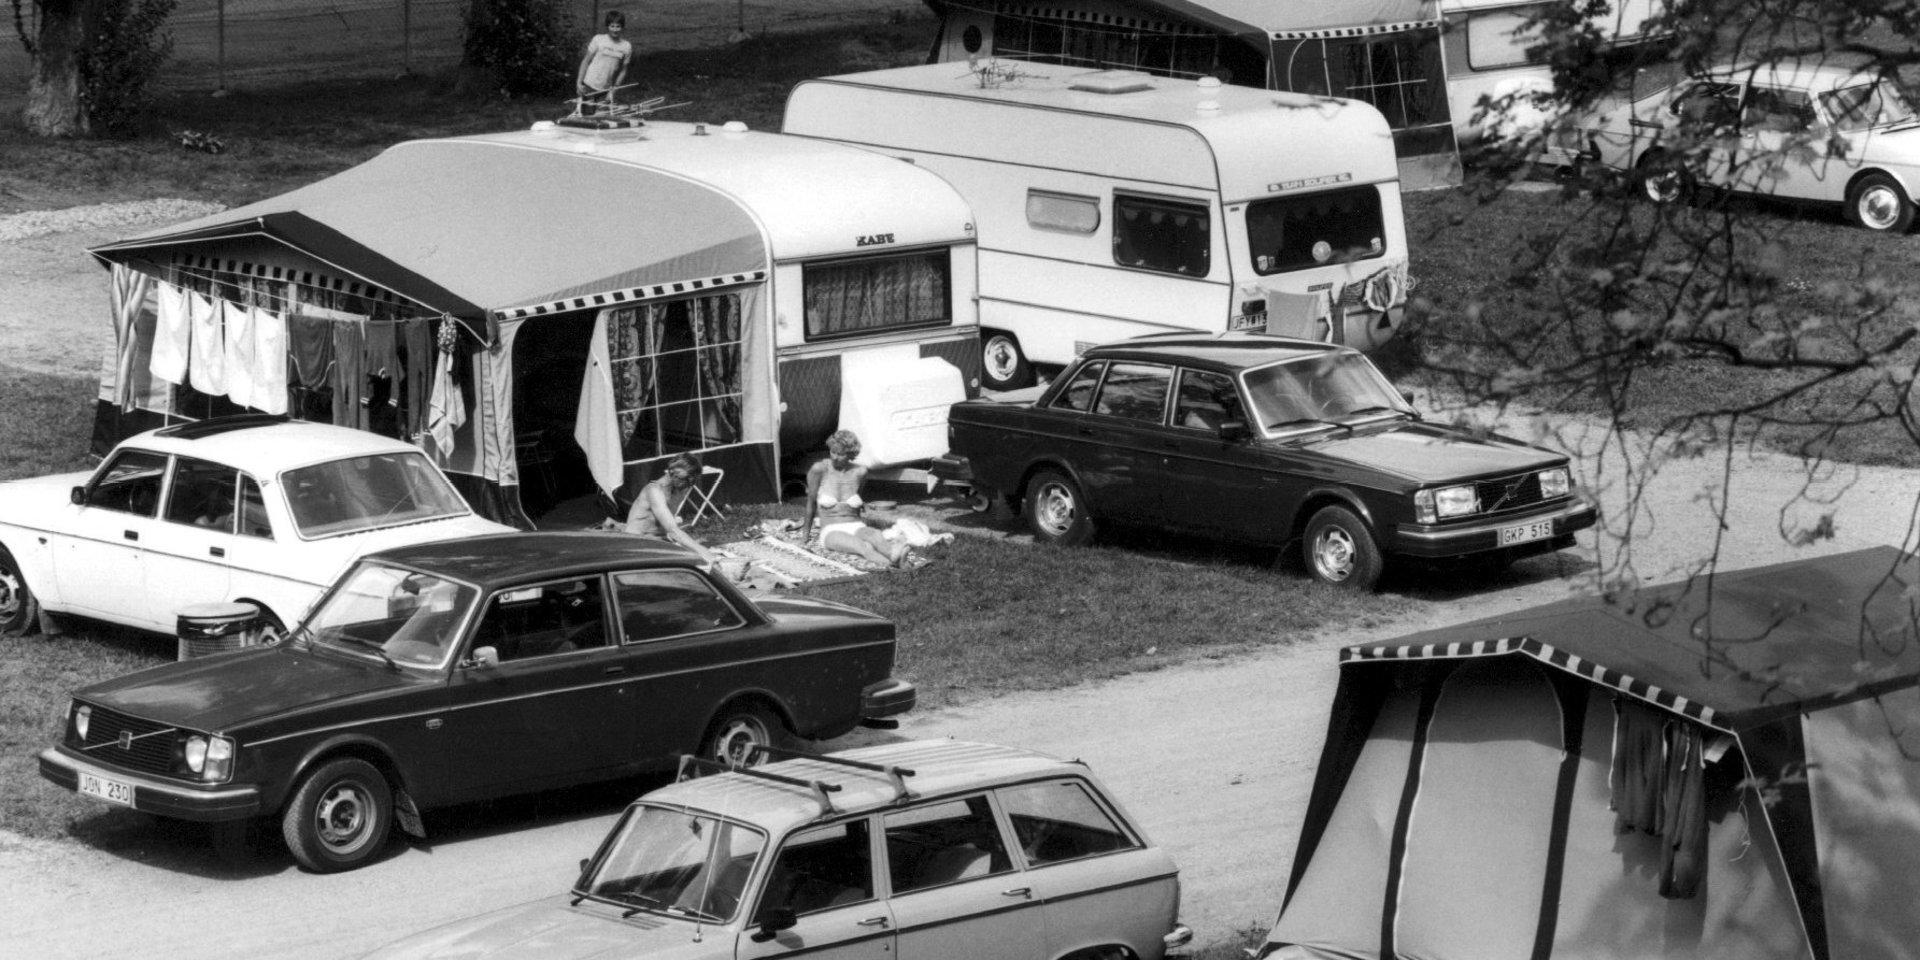 Camping, tidigt 1980-tal. Den typiska ”folkhemssemestern”. 